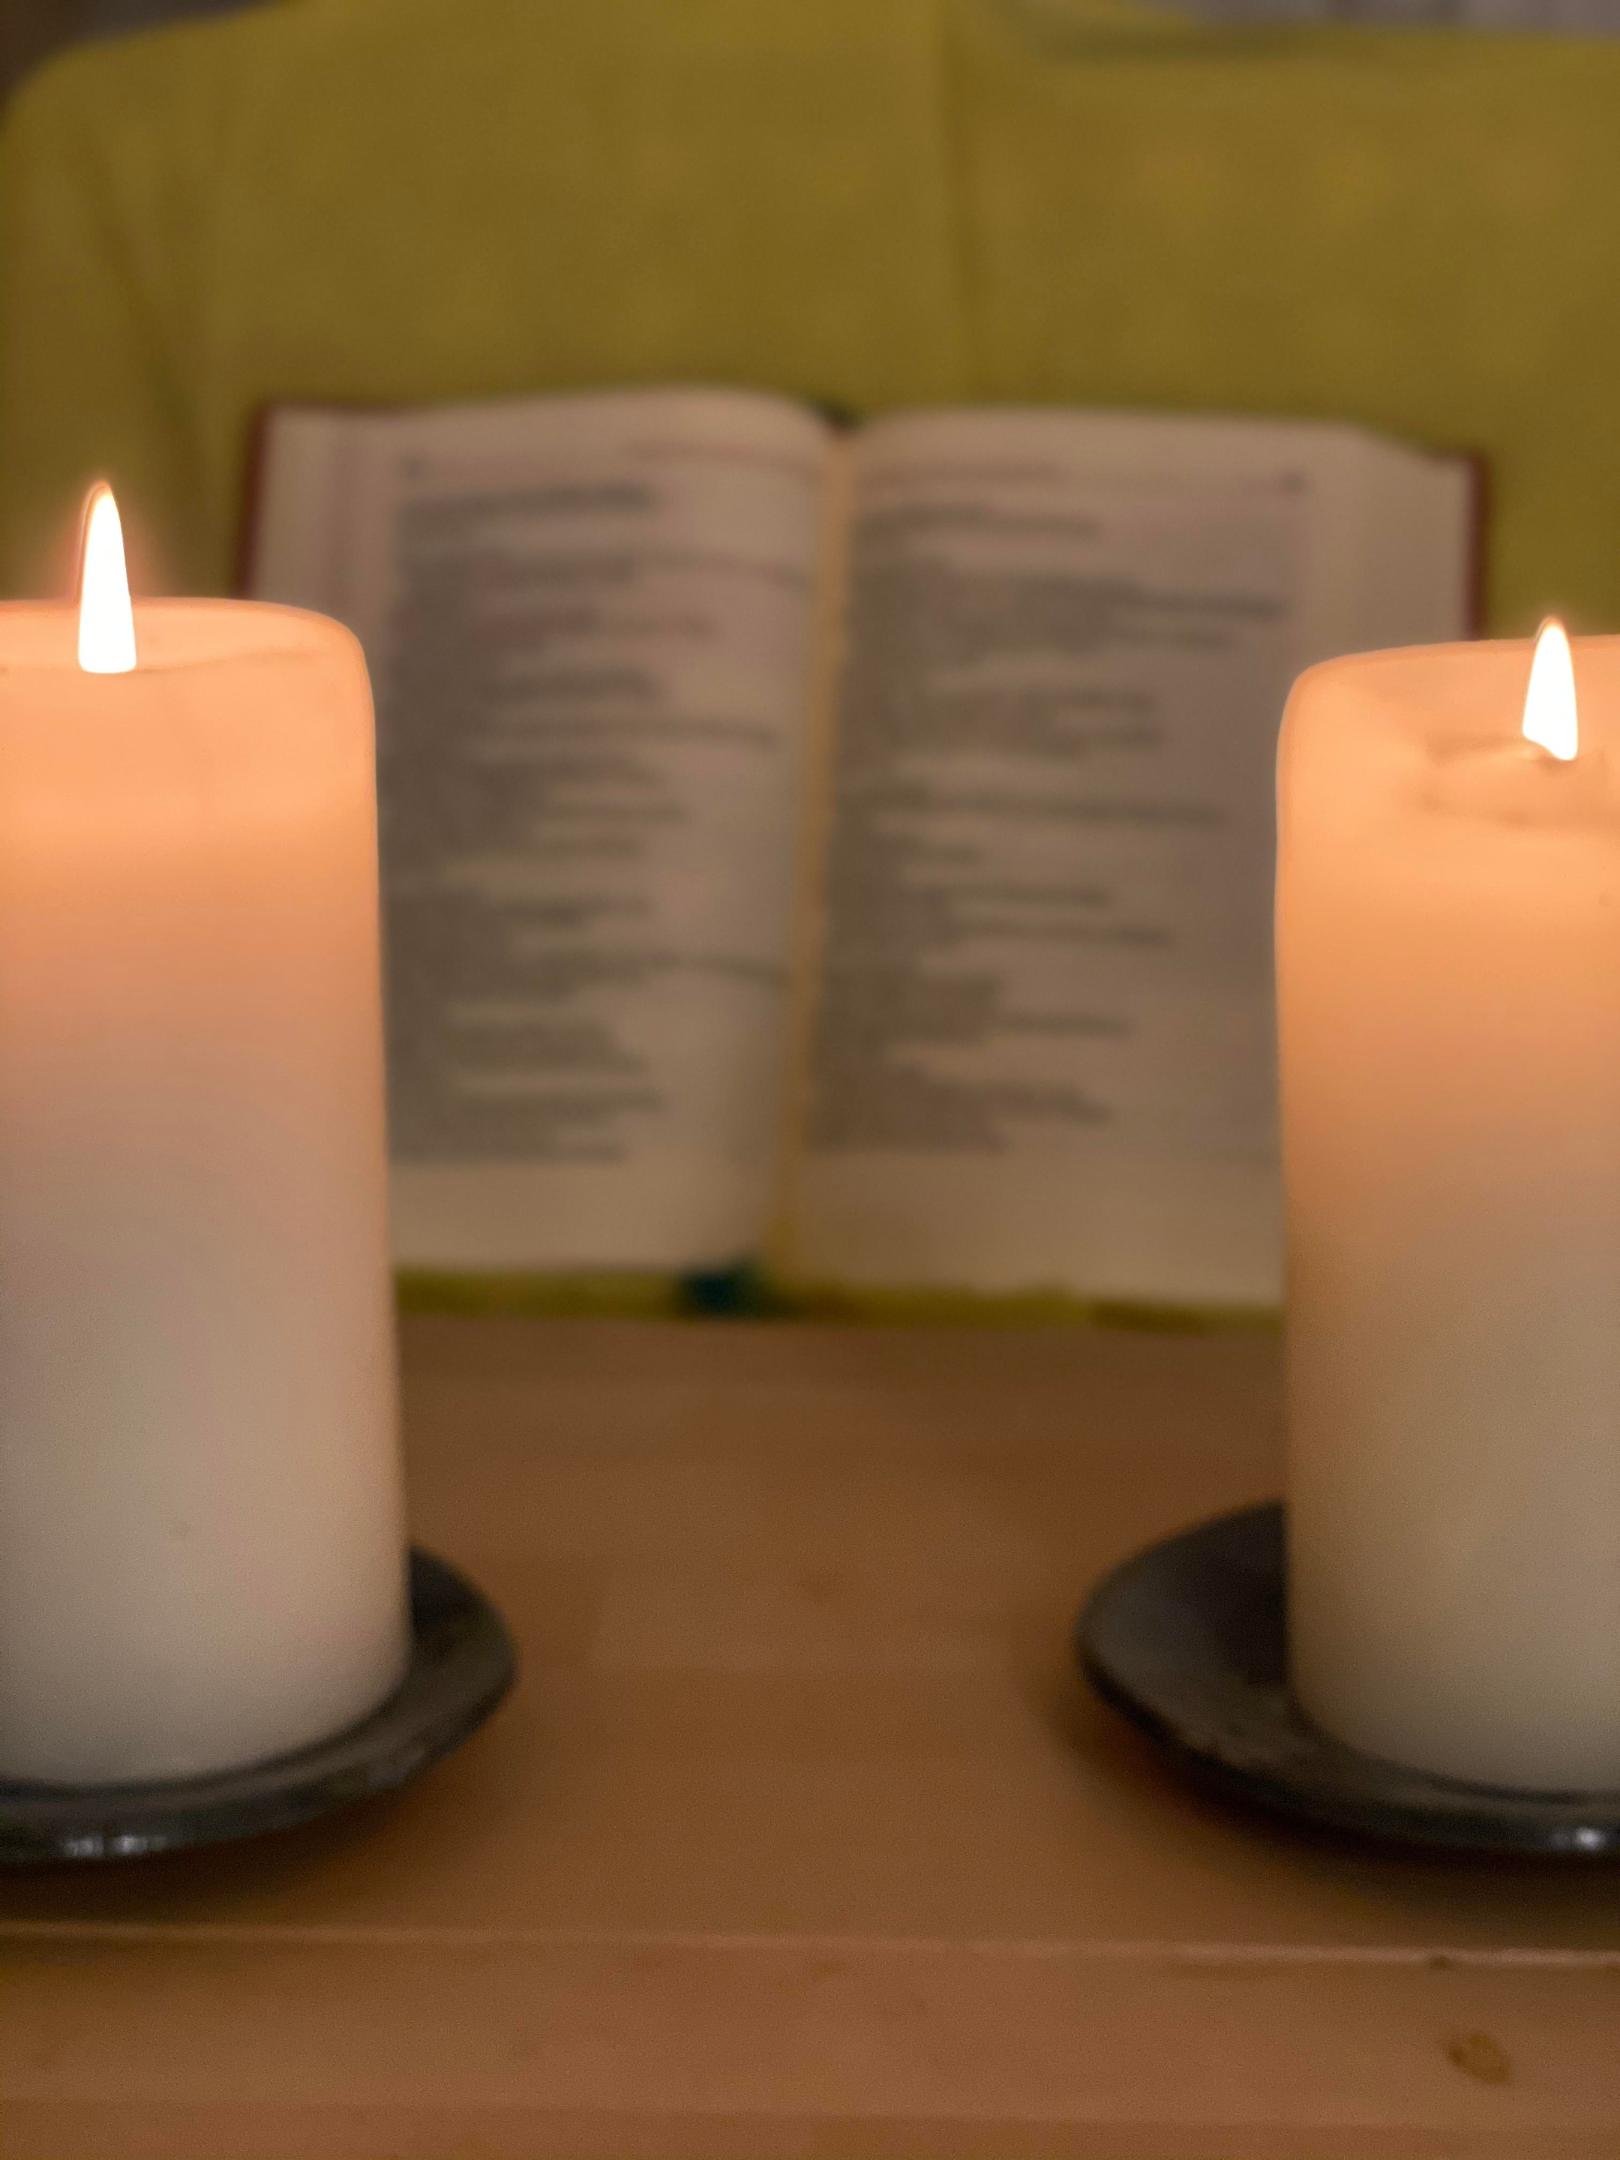 Kerzen mit Bibel (c) Bild: Martin Battert In: Pfarrbriefservice.de